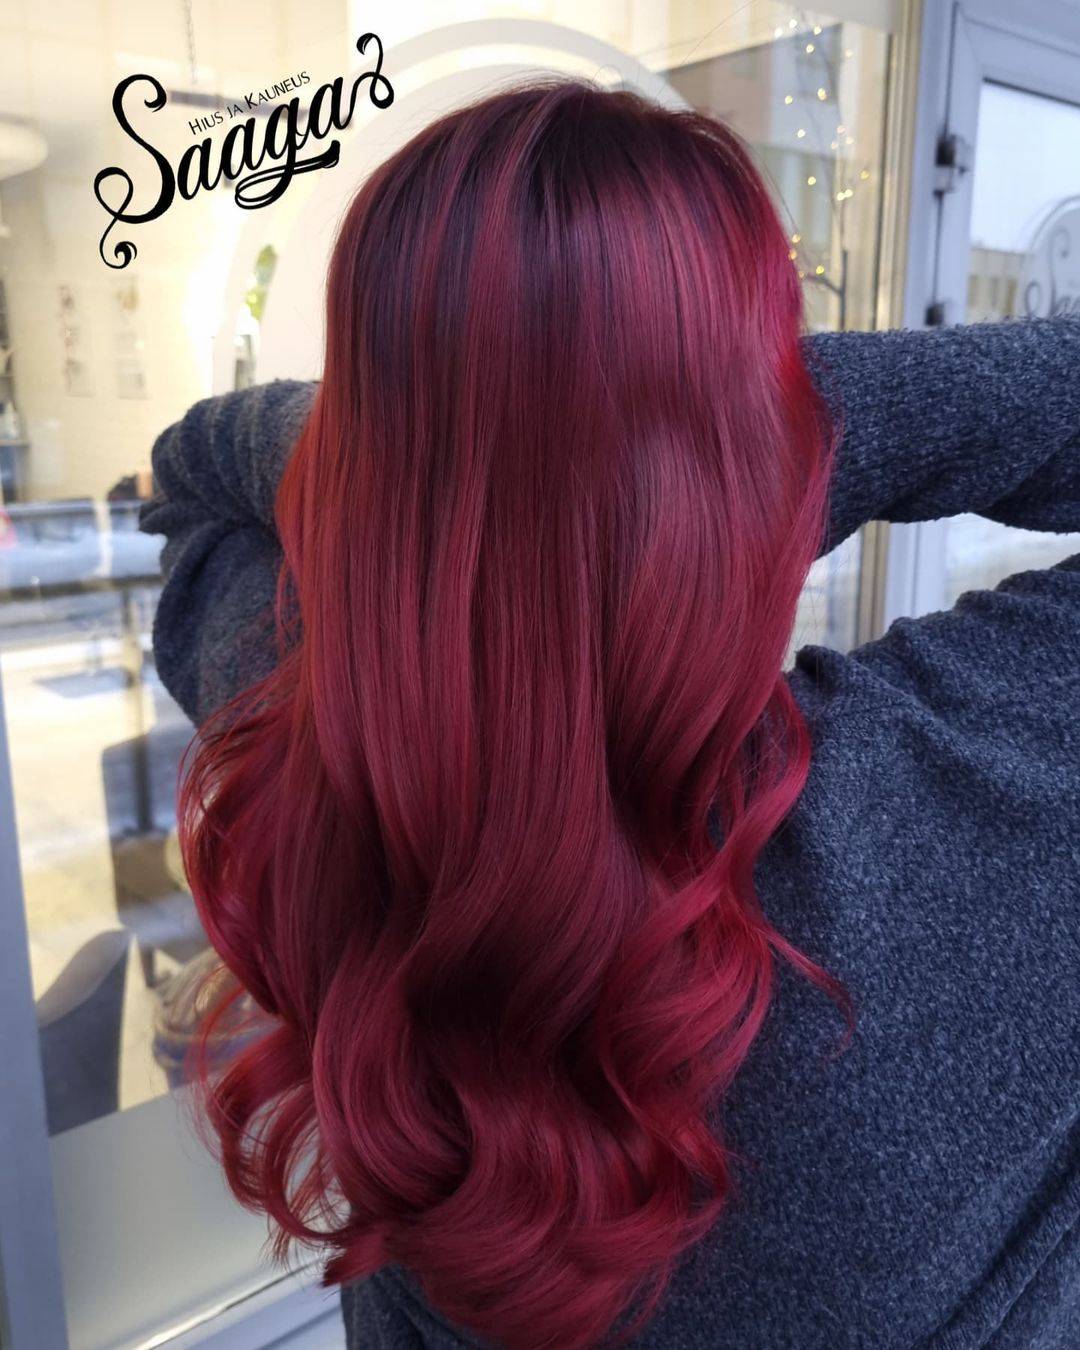 Burgundy hair color 330 burgundy hair color | burgundy hair color for women | burgundy hair color highlights Burgundy Hair Color